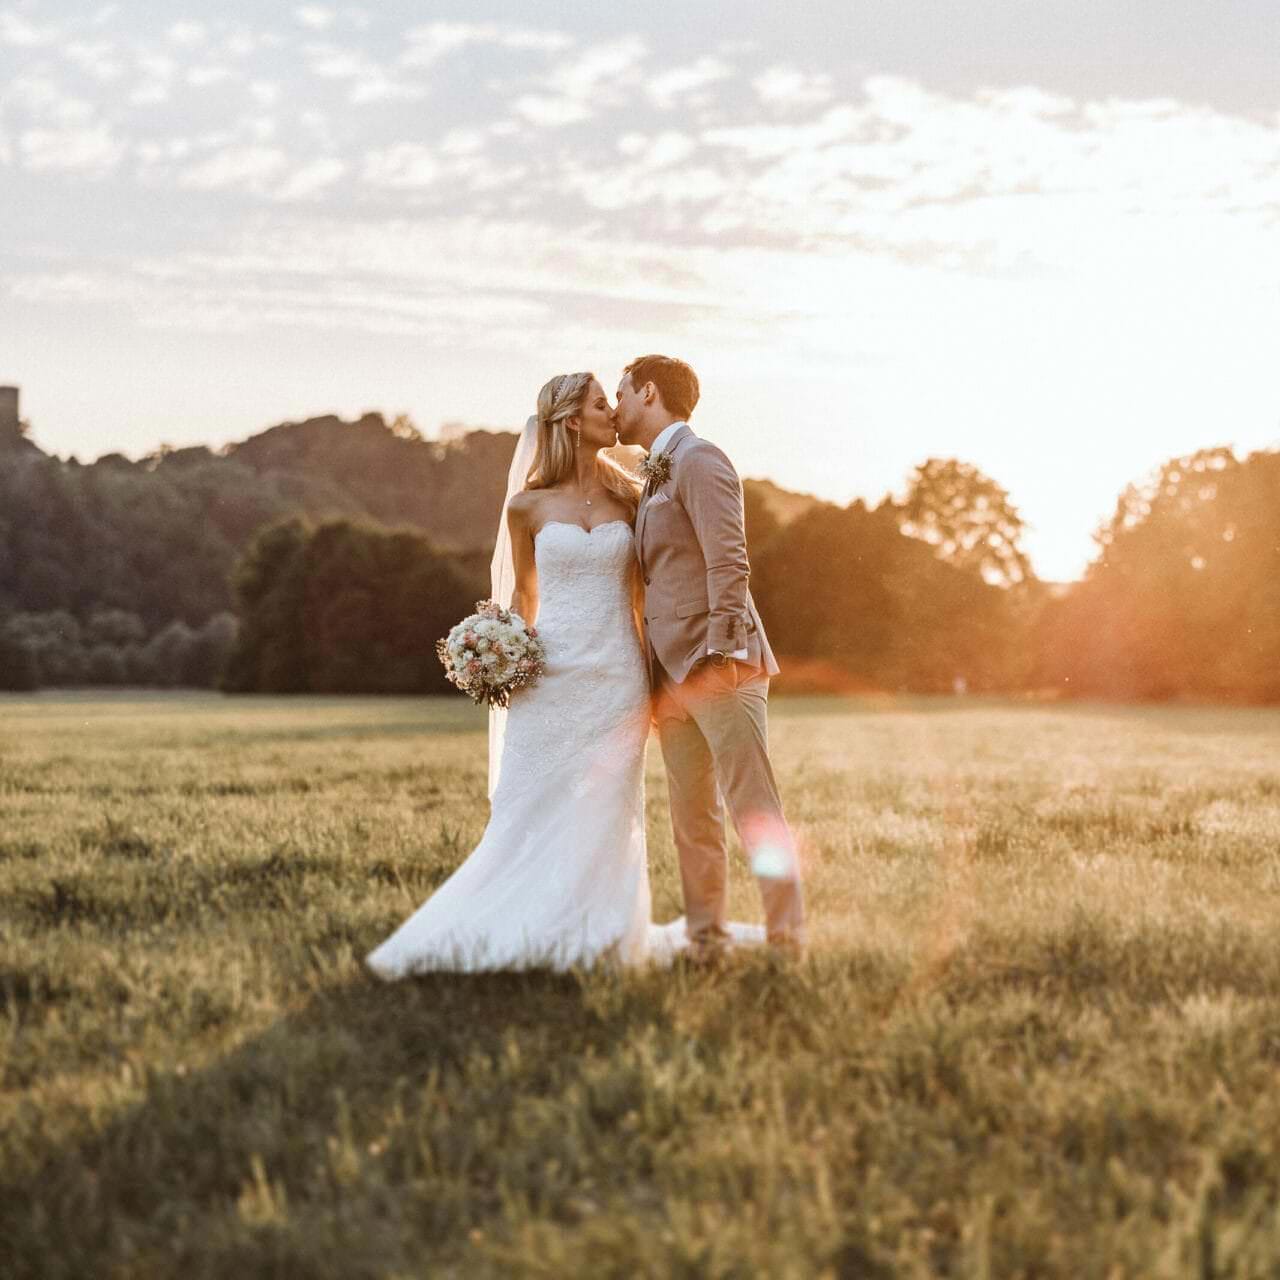 Hochzeitsfotograf Wesel Hochzeit Heiraten Hochzeitsfotos - Hochzeitspaar küsst sich auf einer Wiese bei Sonnenuntergang. Bräutigam hat seine linke Hand in der Hosentasche. Die Braut hält ihren Blumenstrauß in der rechten Hand fest. Im Hintergrund ist Wald zu erkennen